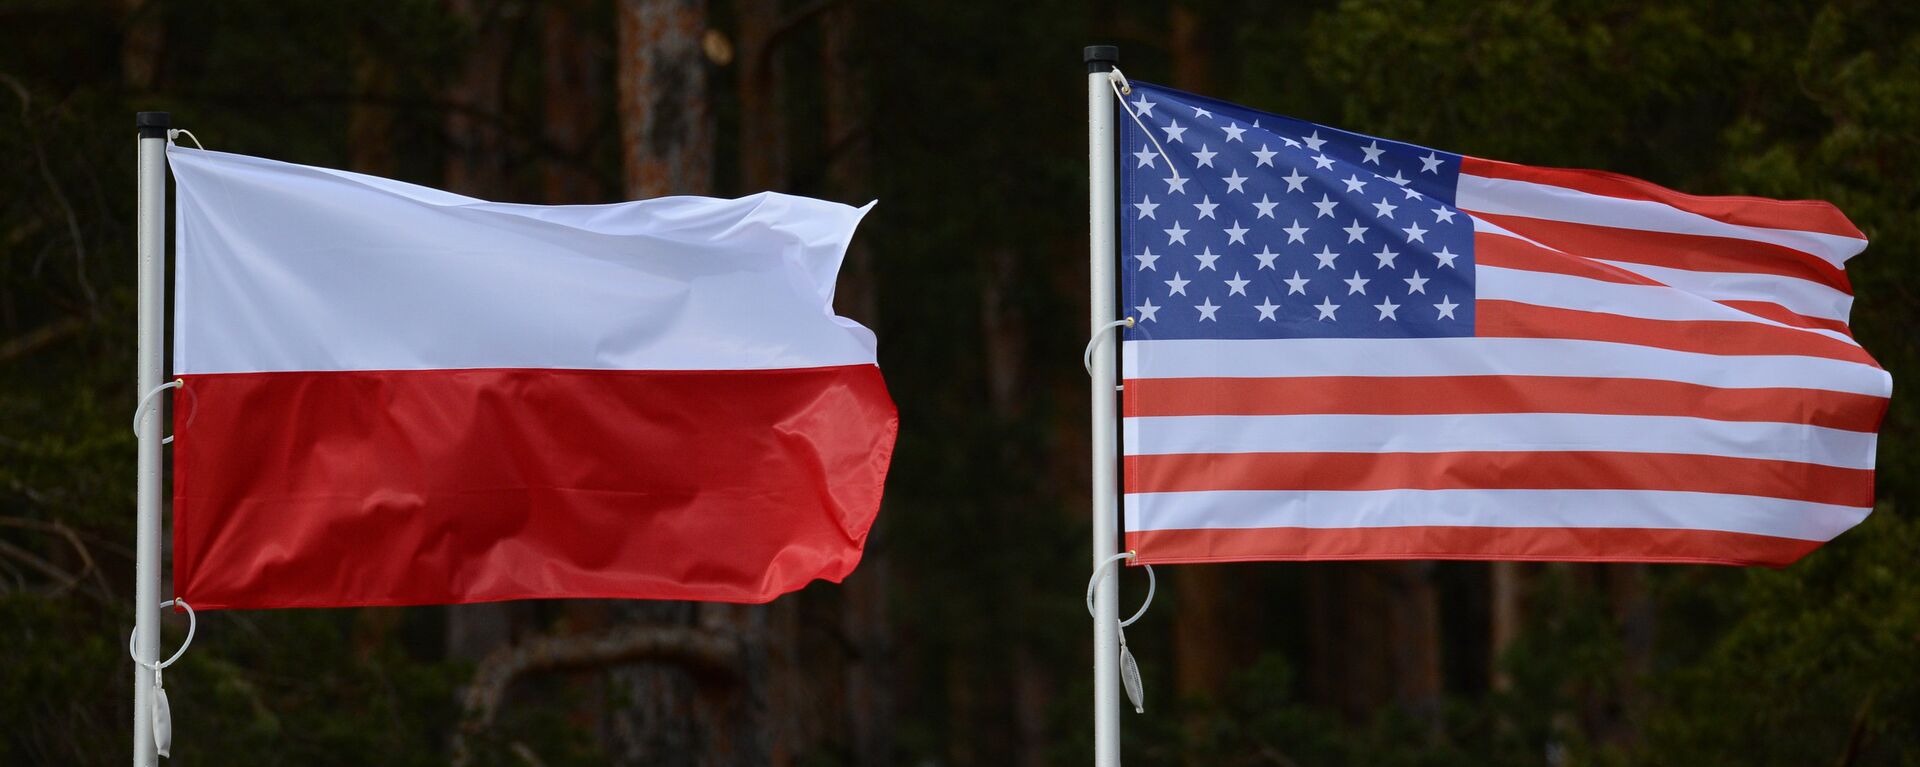 Флаги США и Польши - Sputnik Латвия, 1920, 27.07.2021